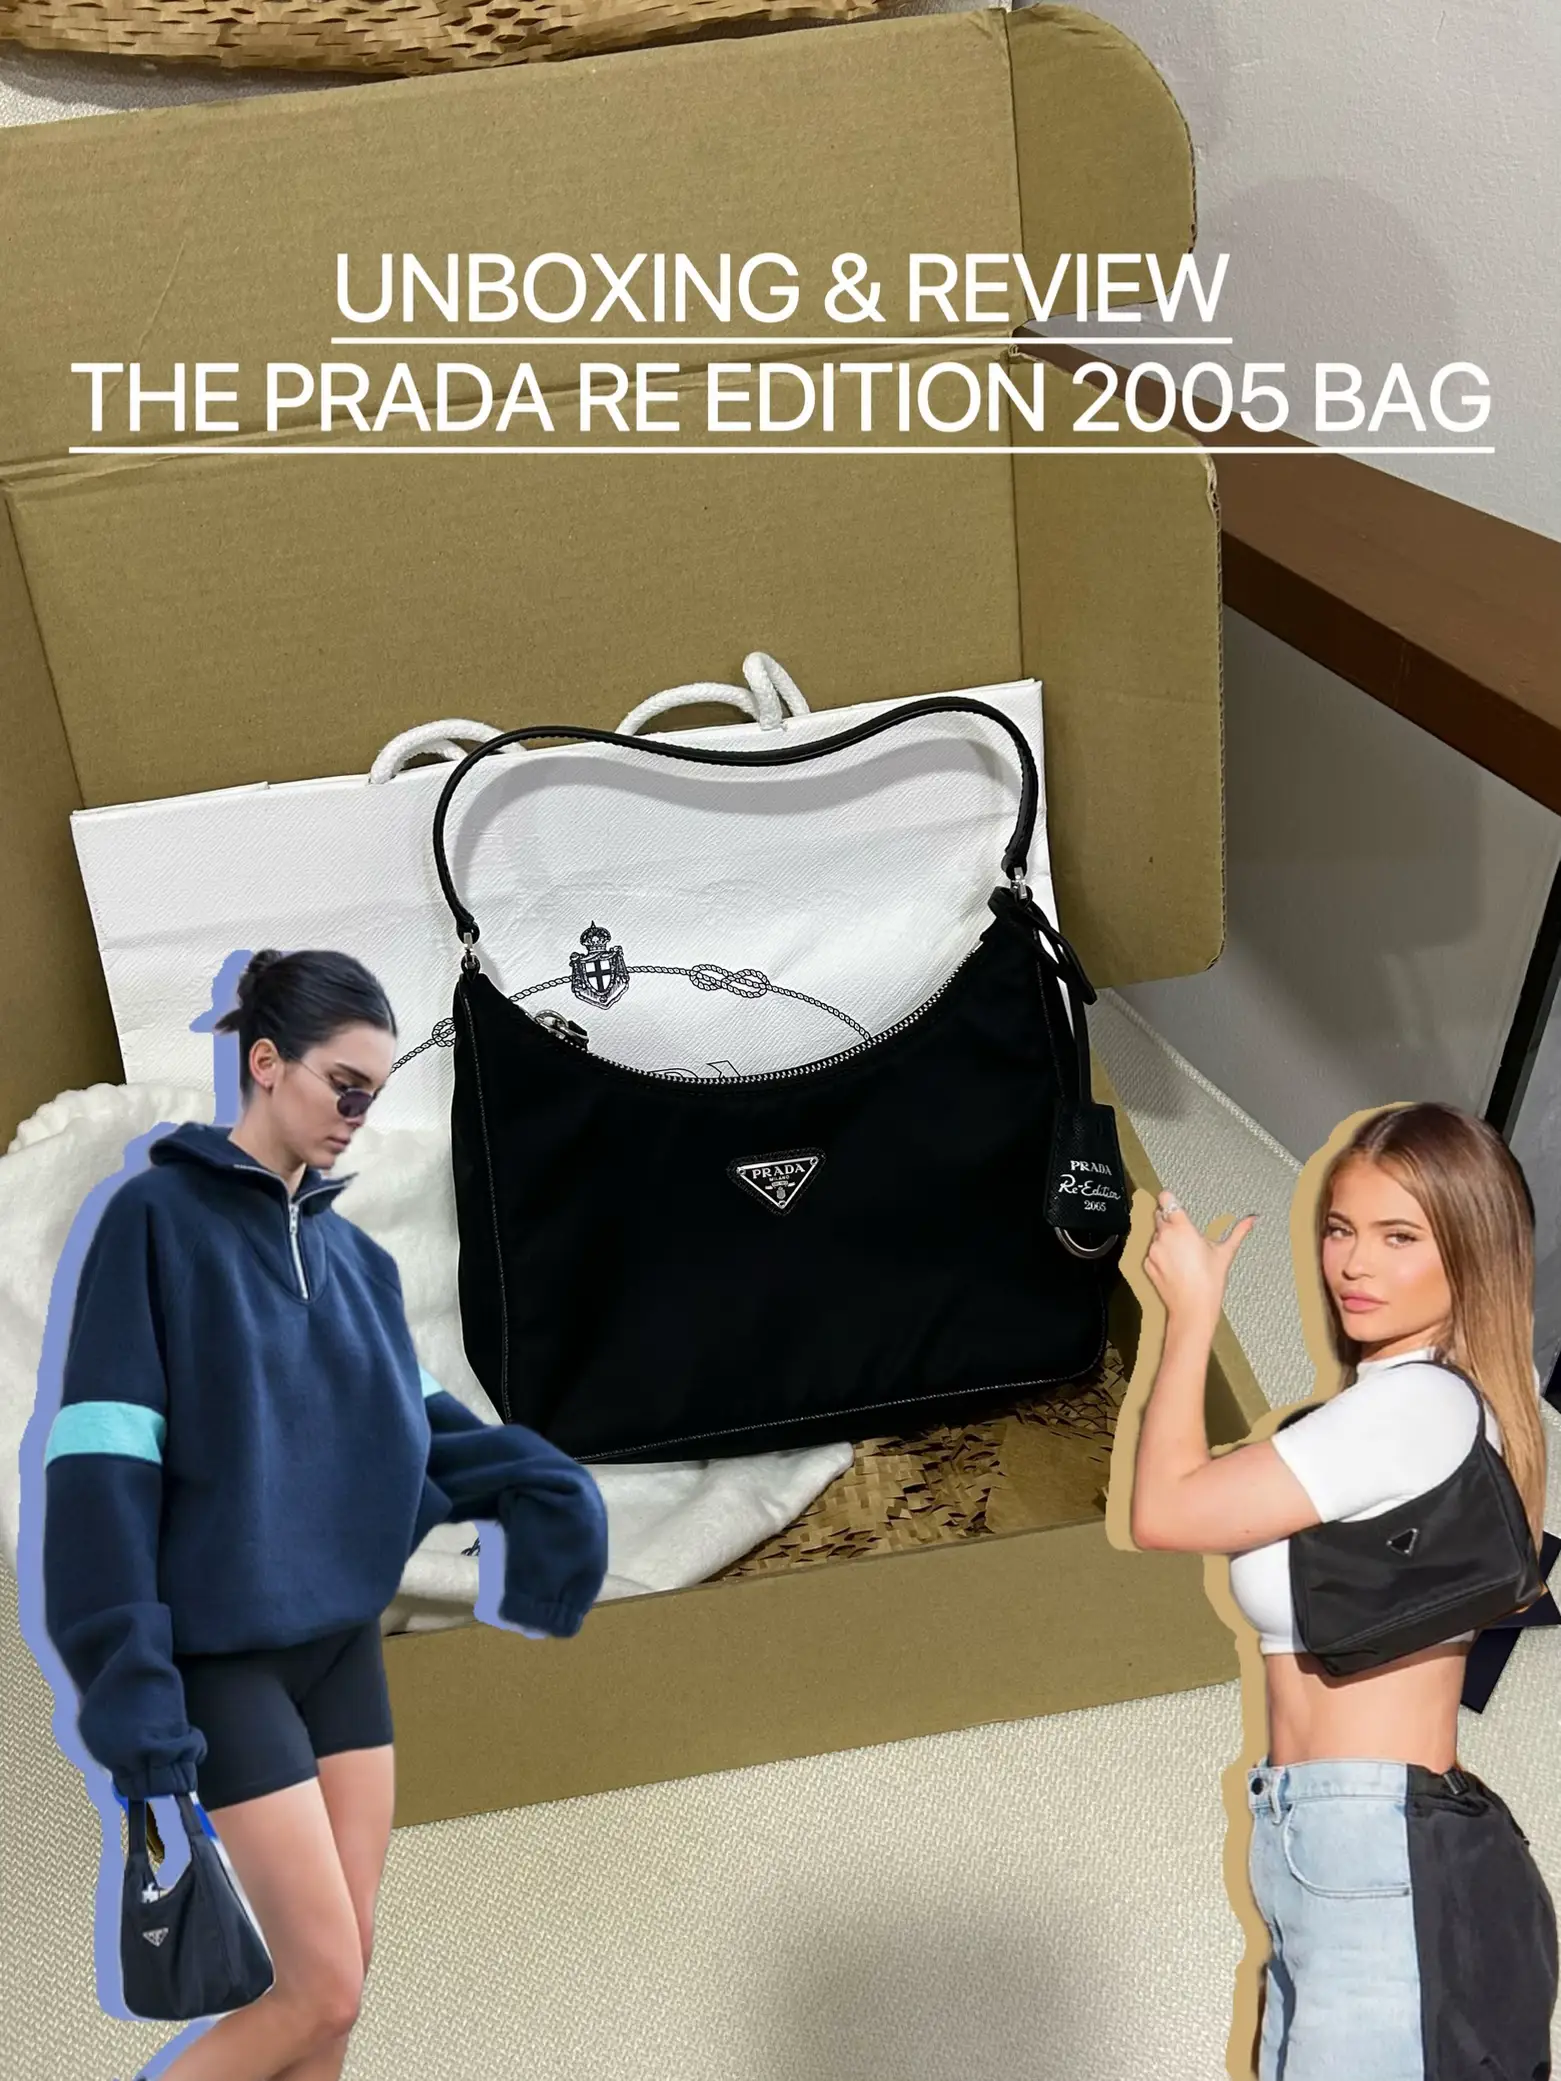 PradaUnboxing #PradaBag My Prada Unboxing and Review